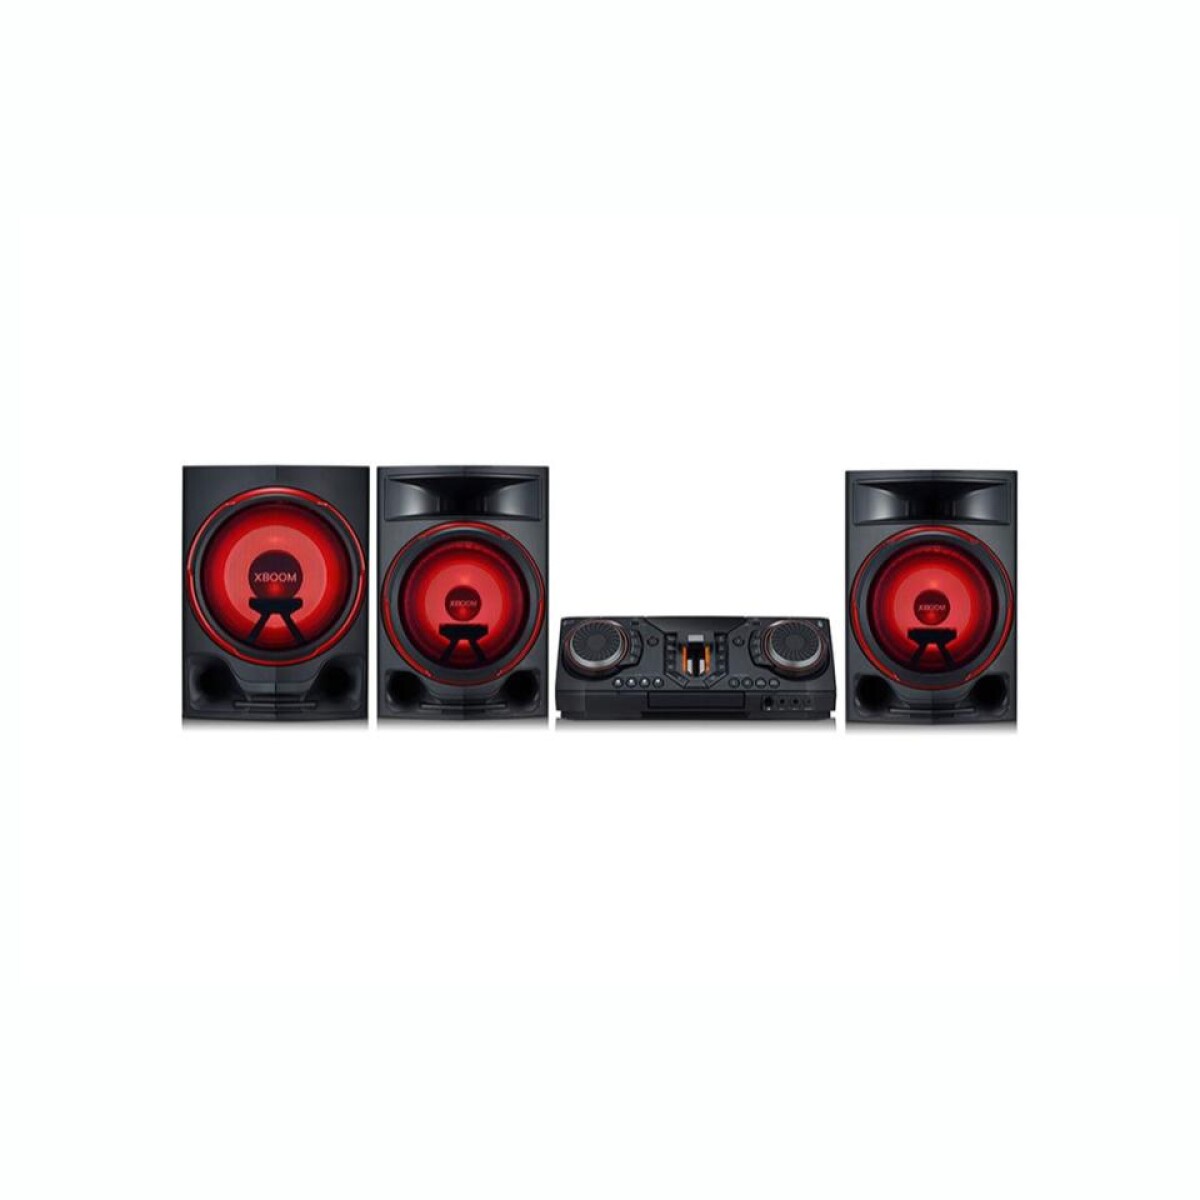 Minicomponente LG Xboom CL88 2900W Negro y Rojo 